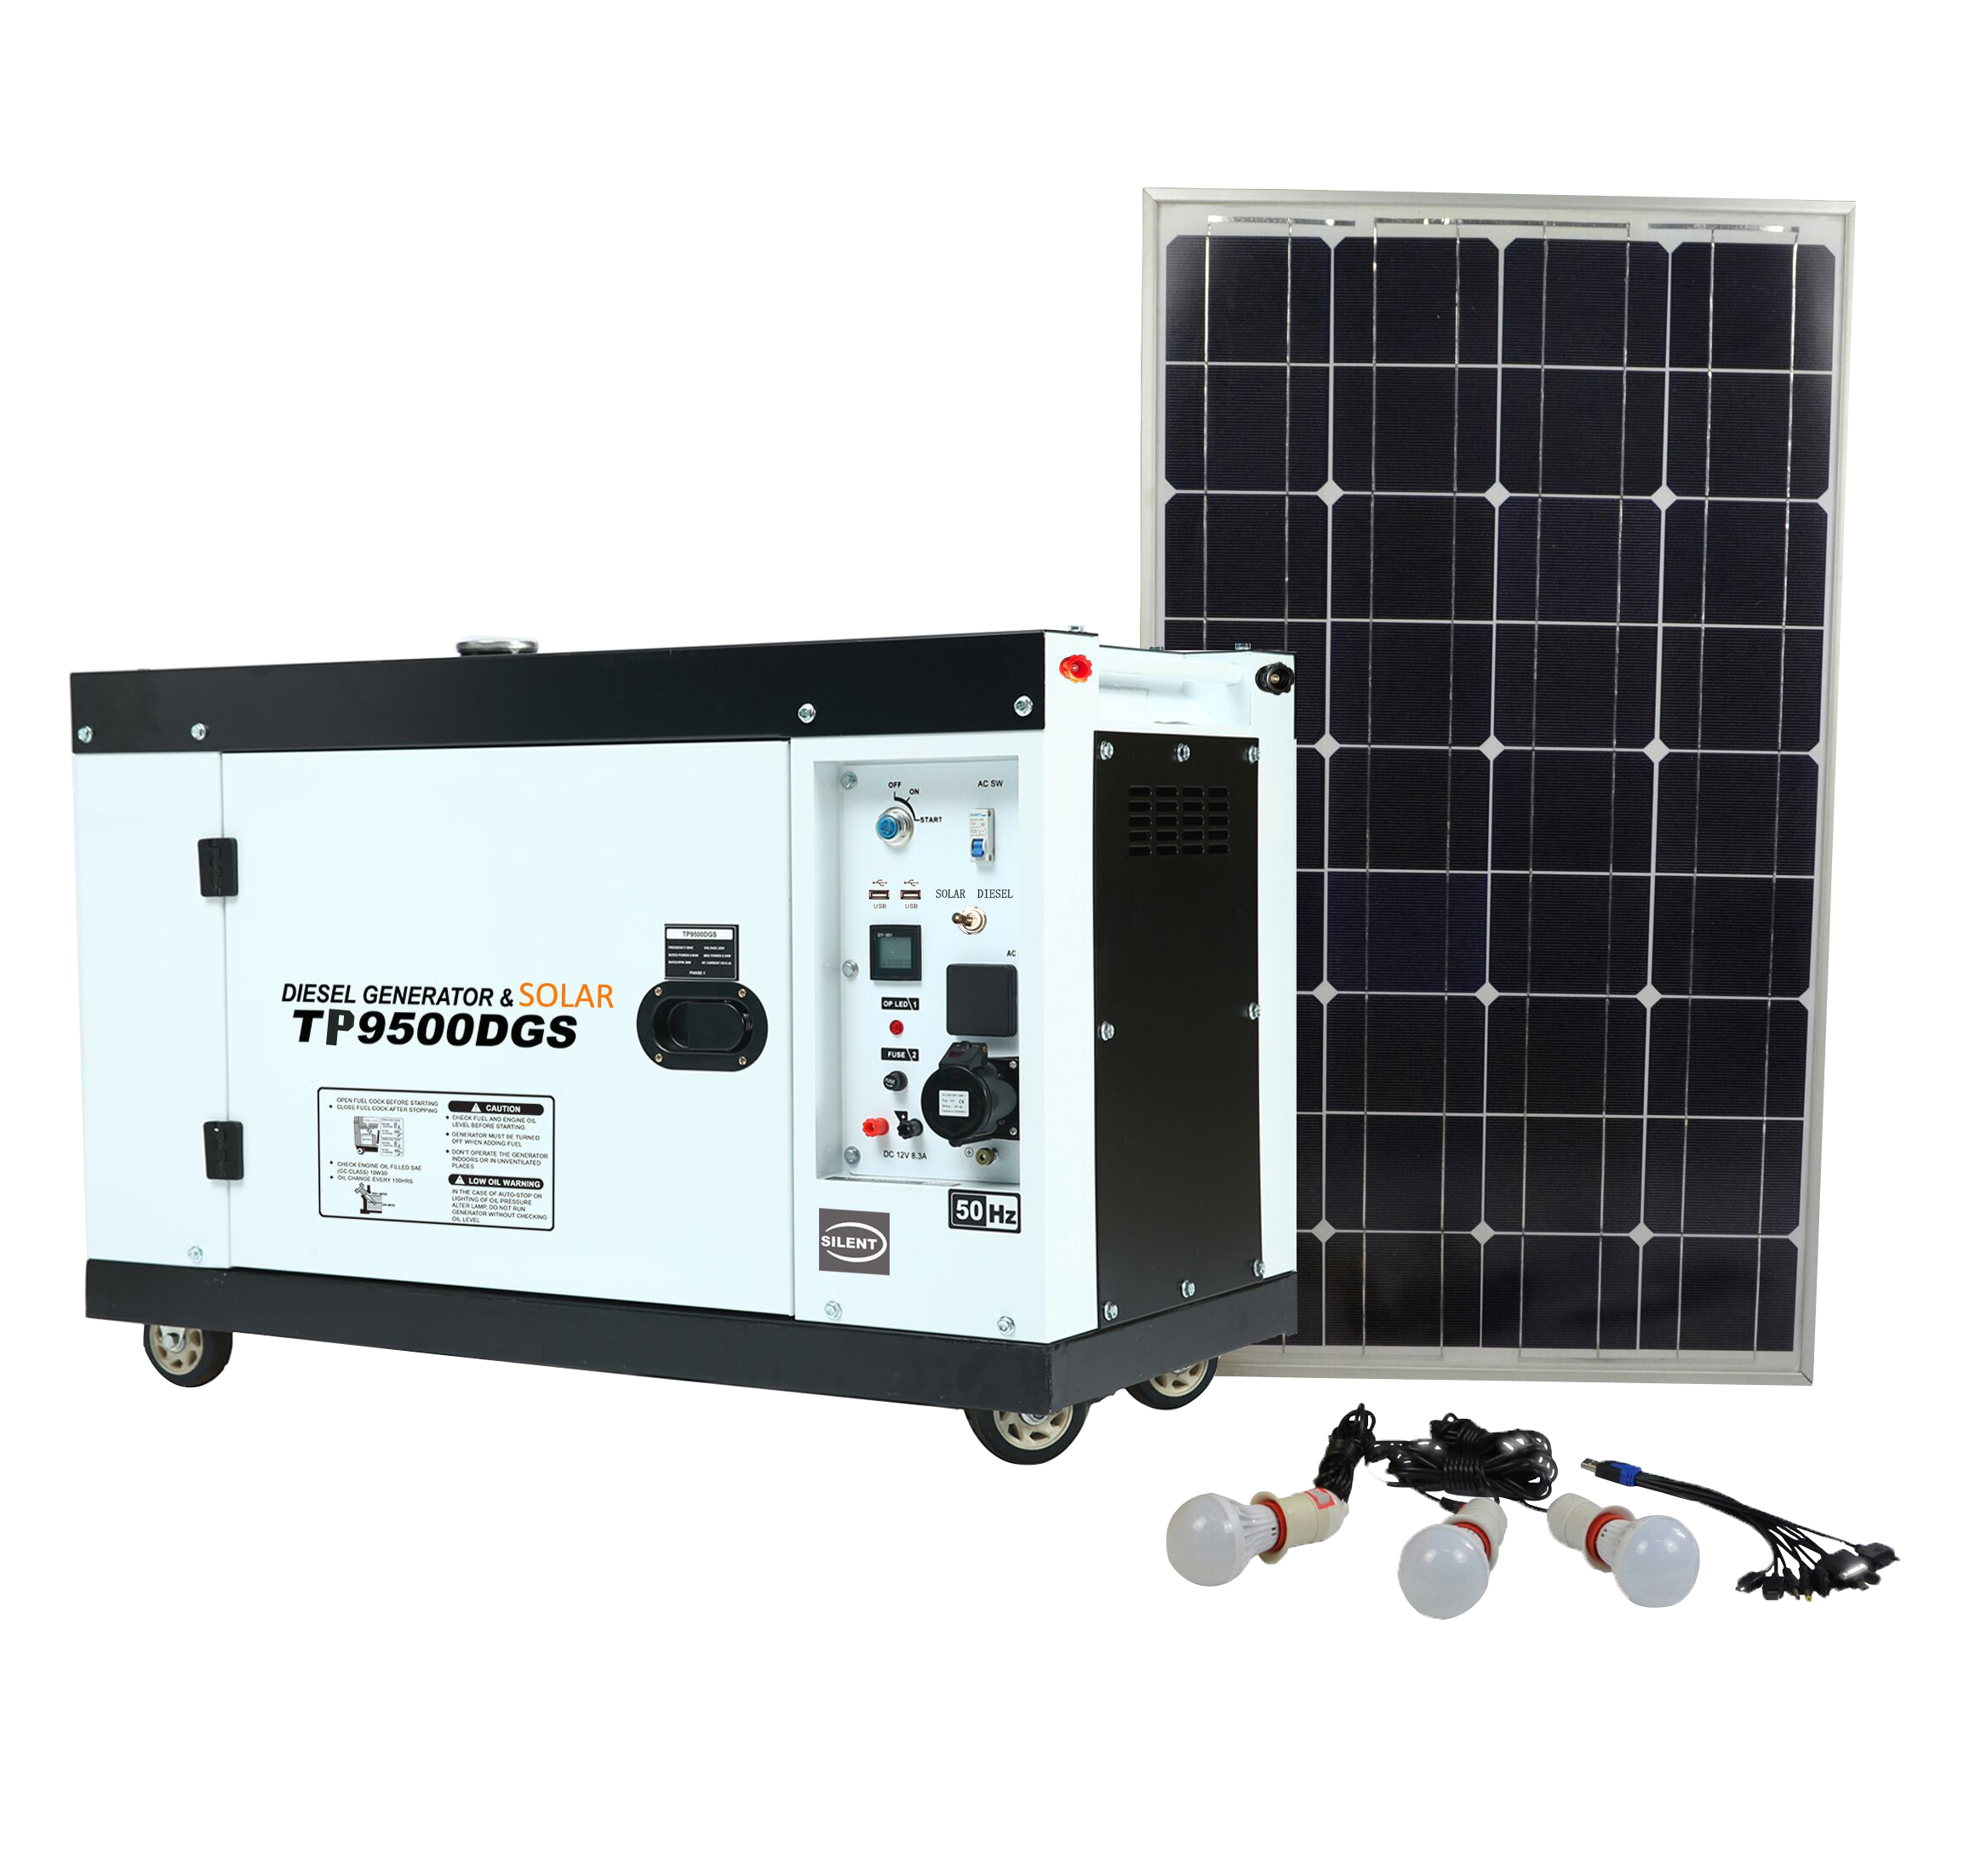 solar and diesel comb generators